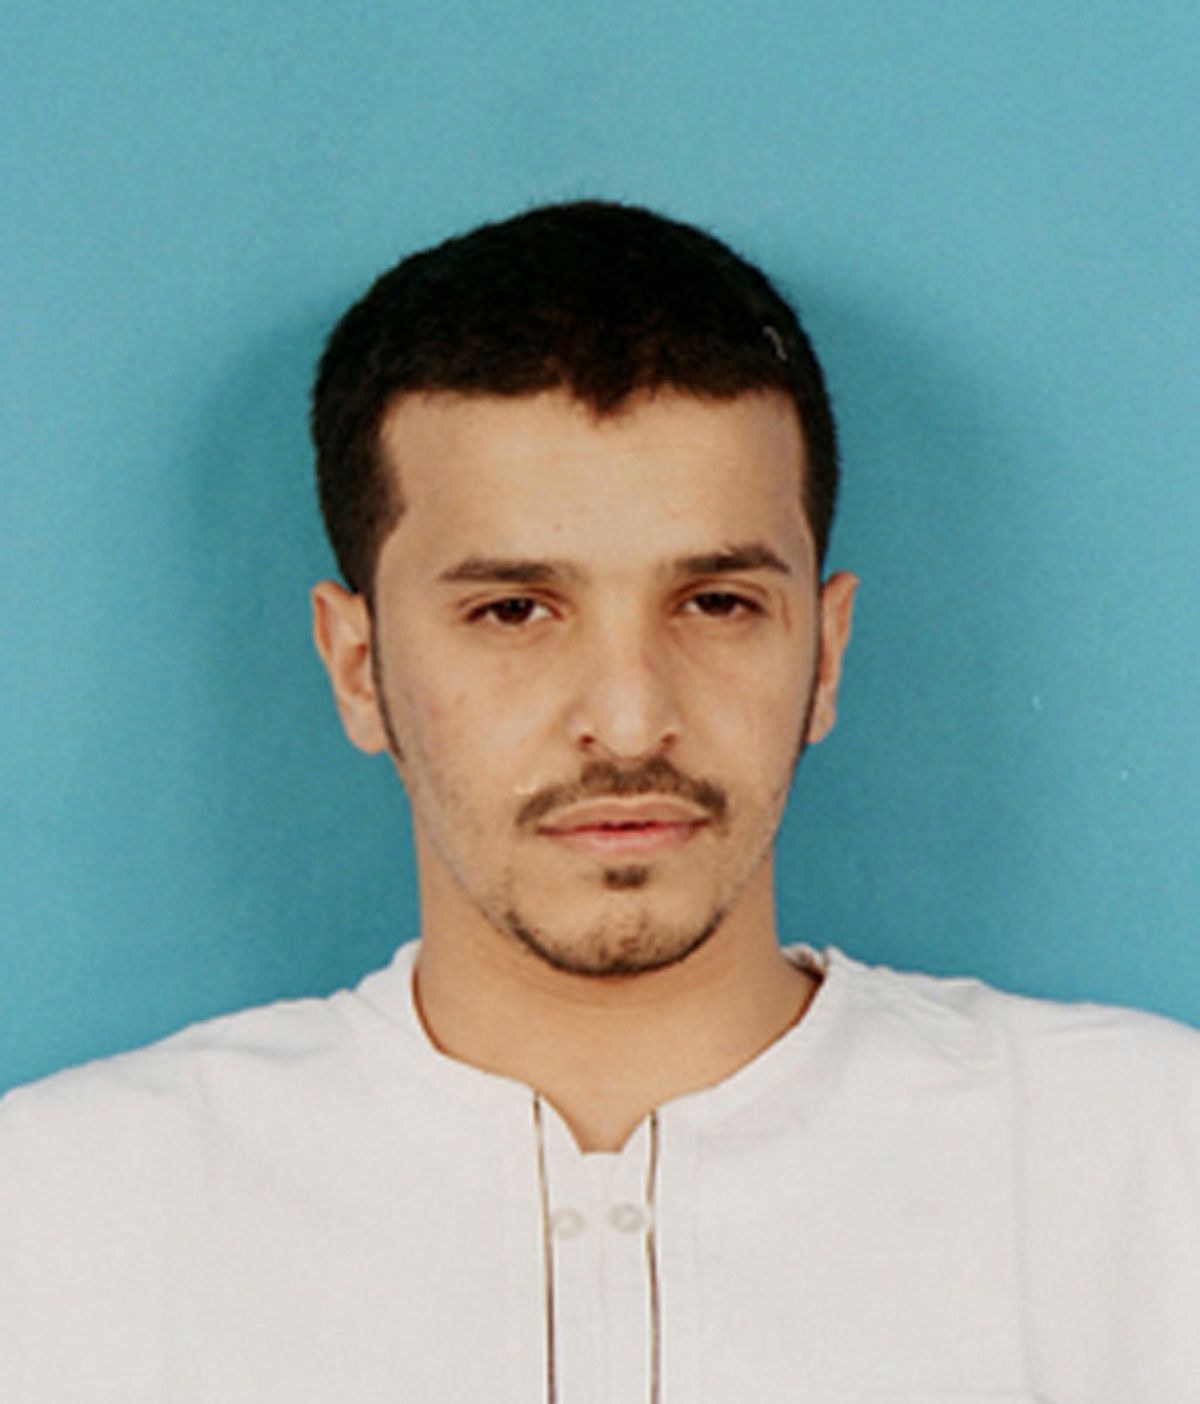 Ibrahim Hassan al-Asiri